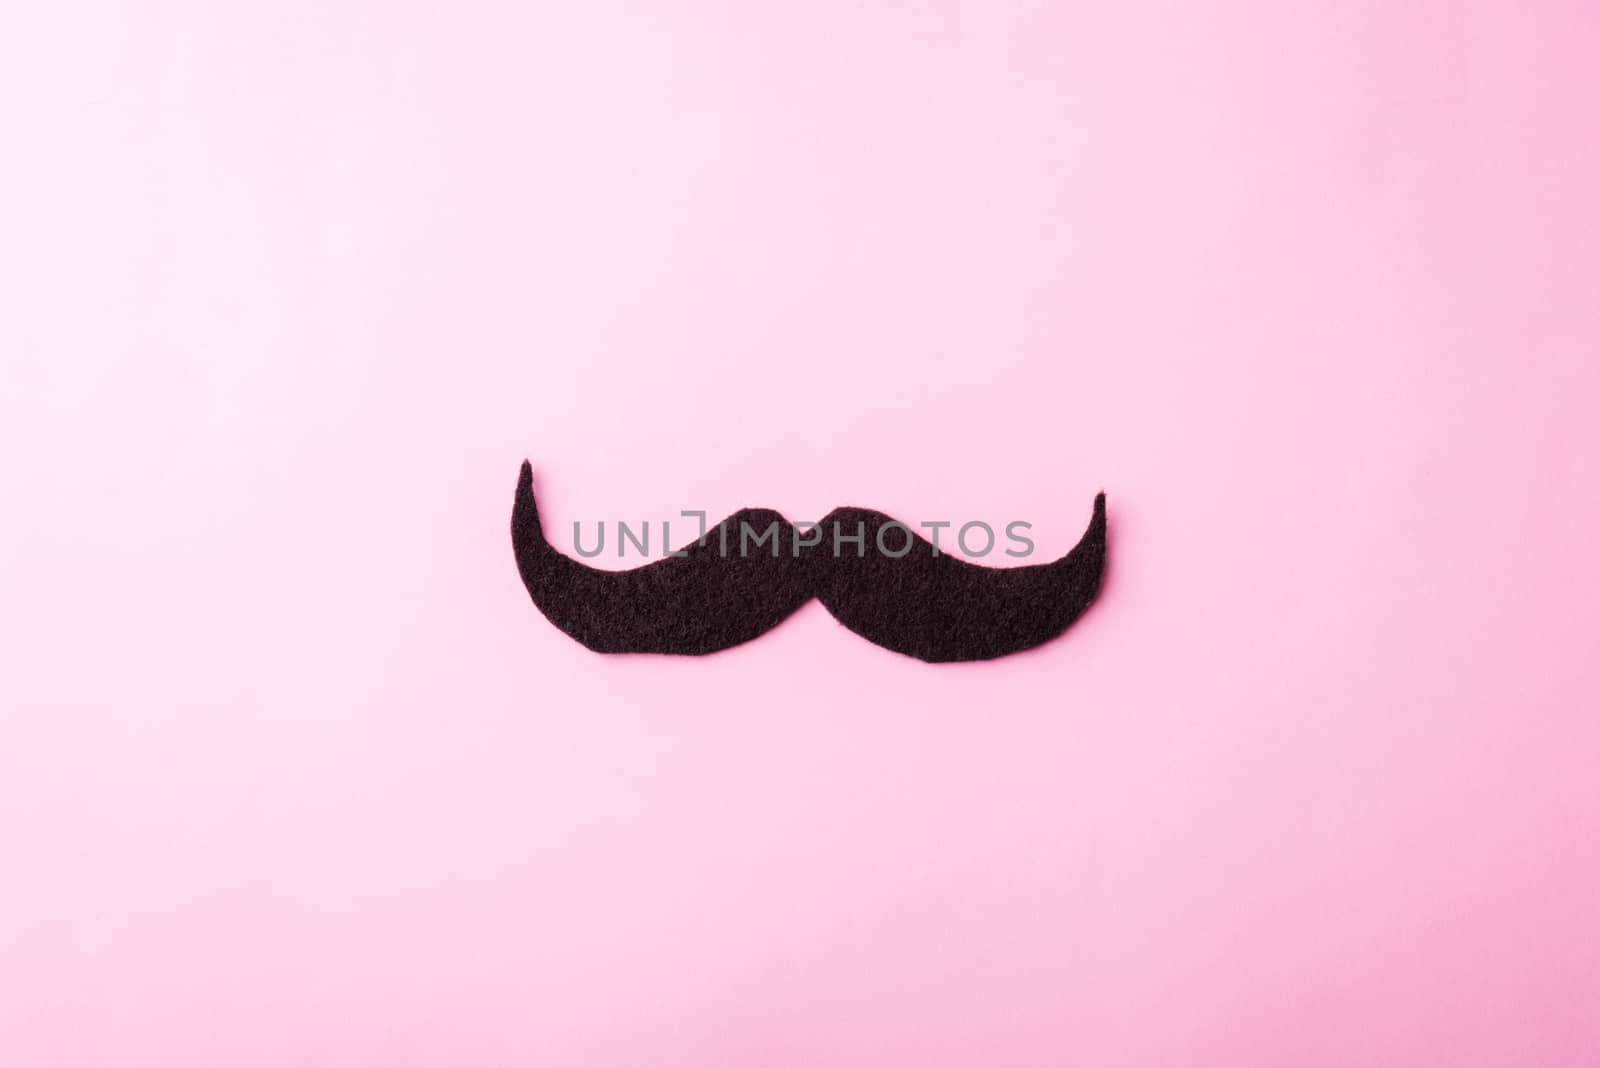 Black mustache paper by Sorapop